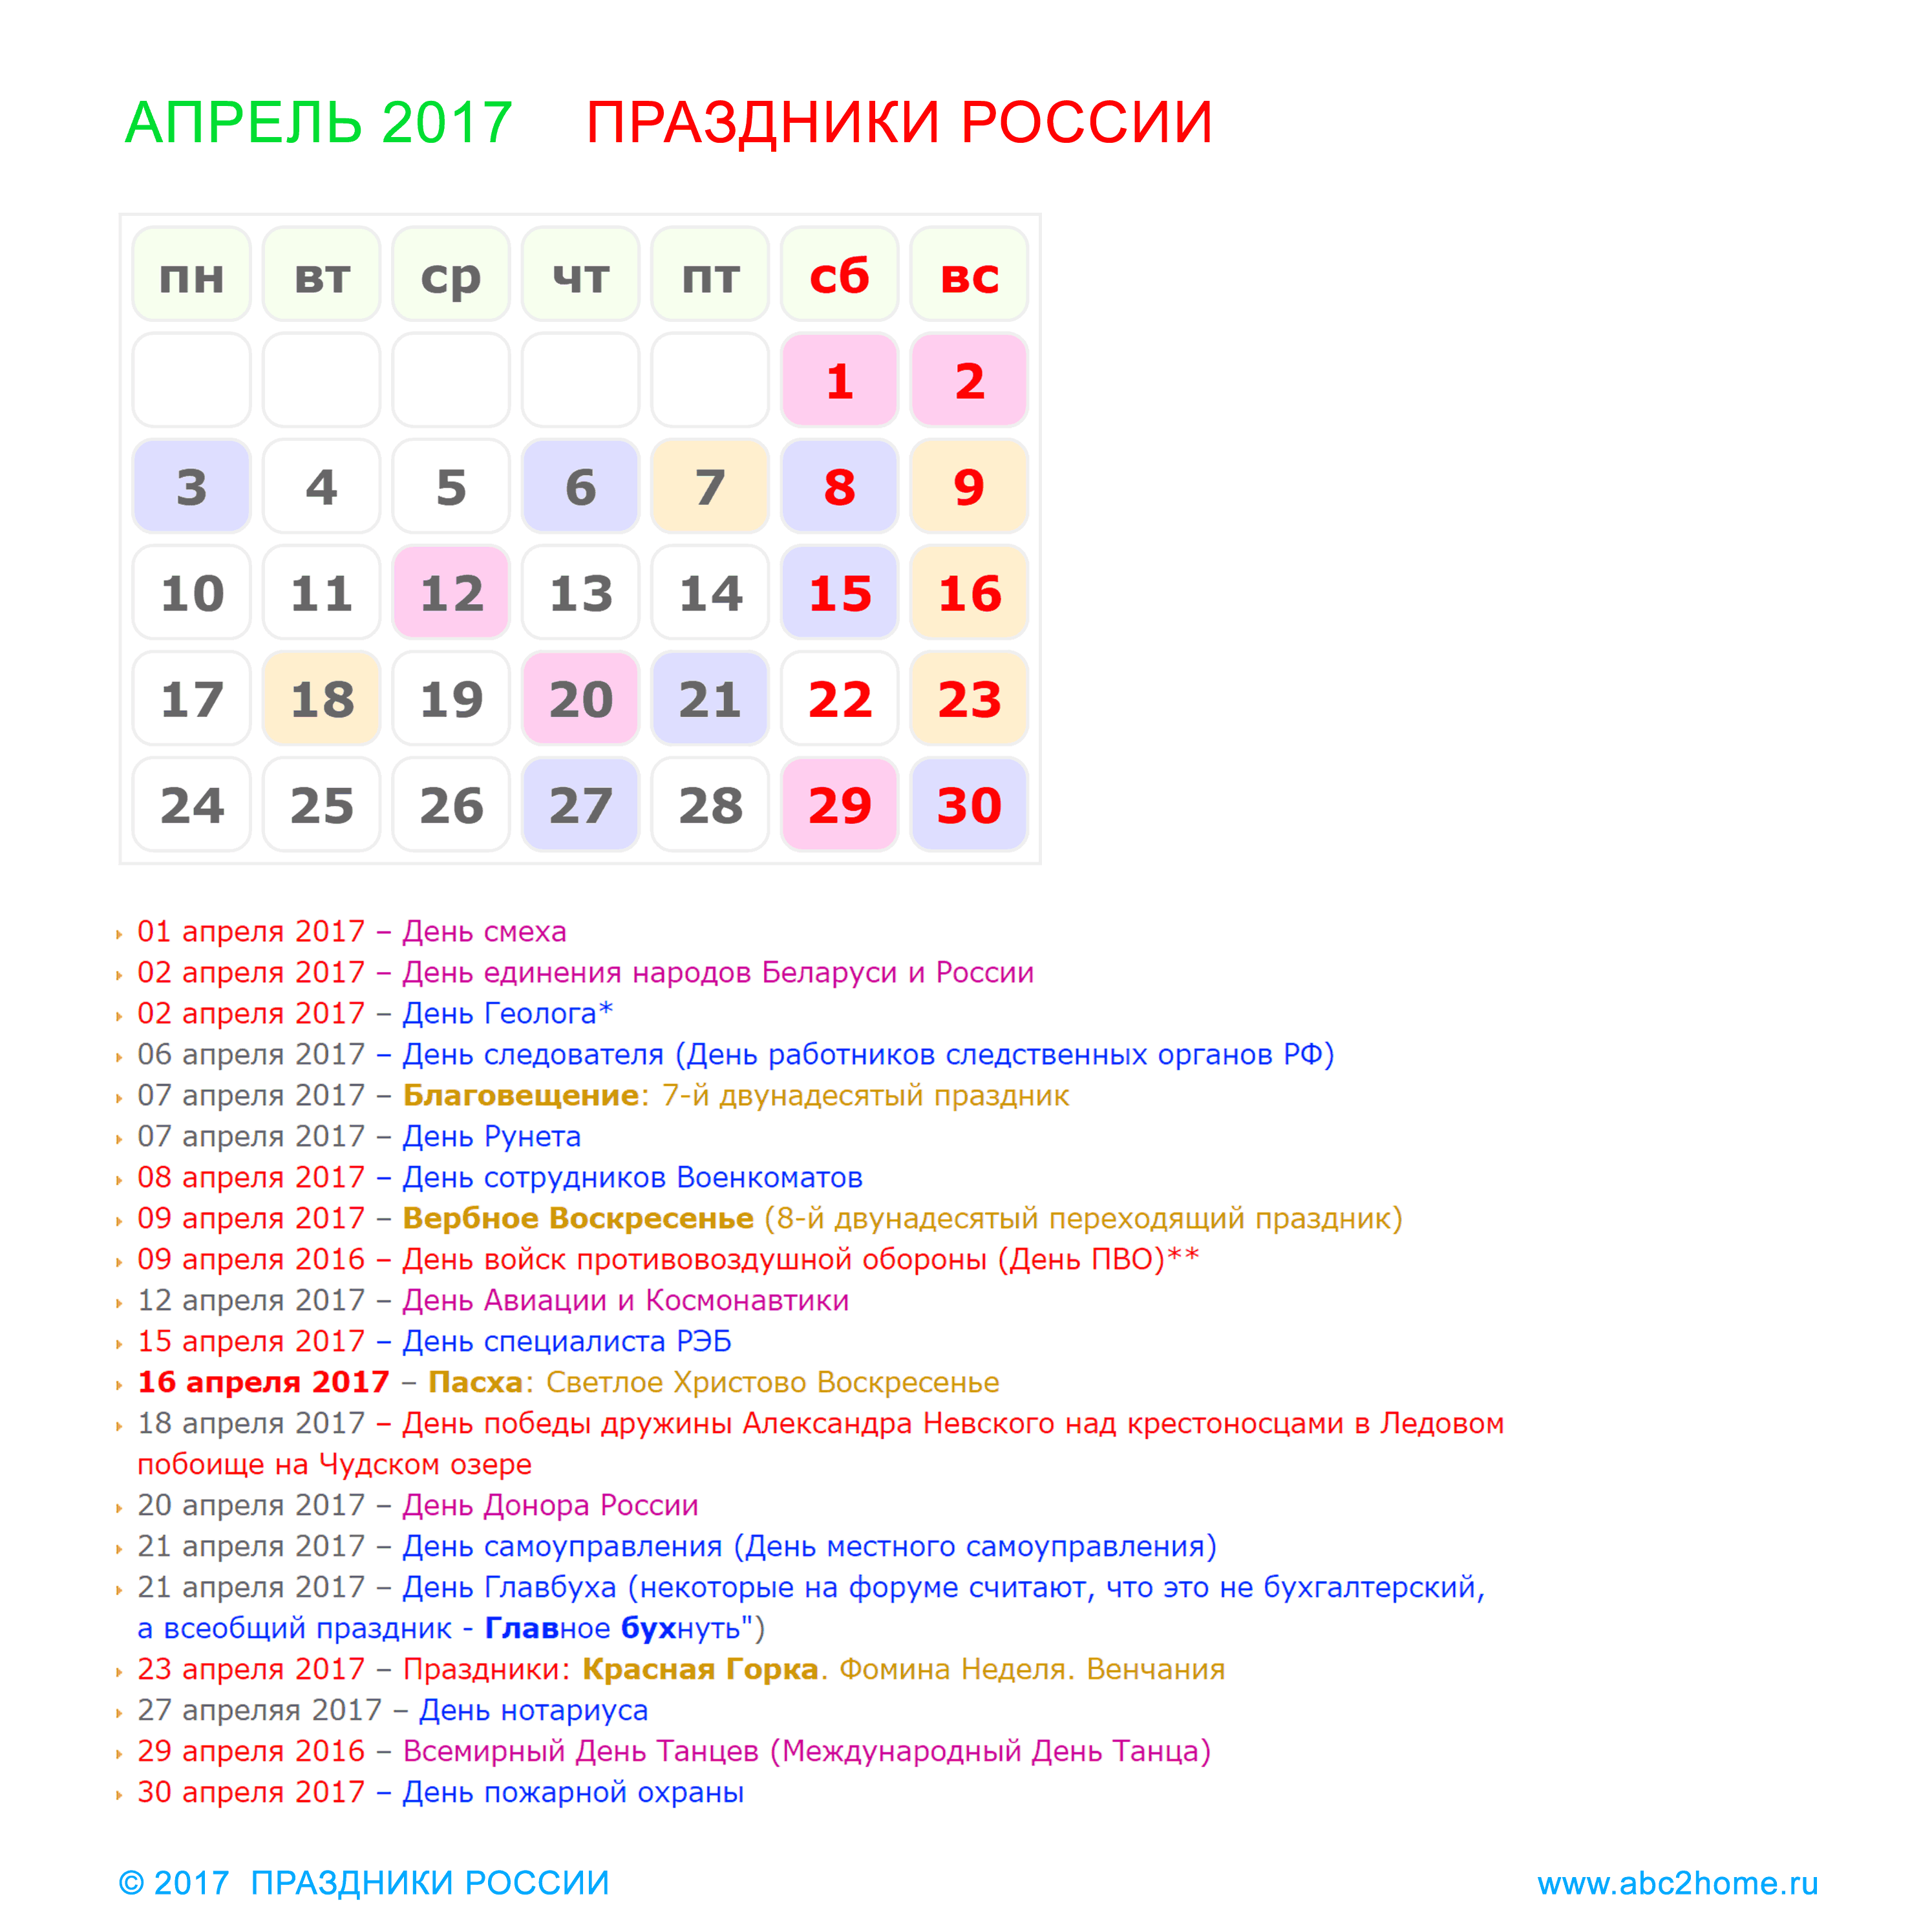 Большие праздники в апреле. Праздники в апреле. Праздники в апреле в России. Календарь российских праздников. Профессиональные праздники в апреле.